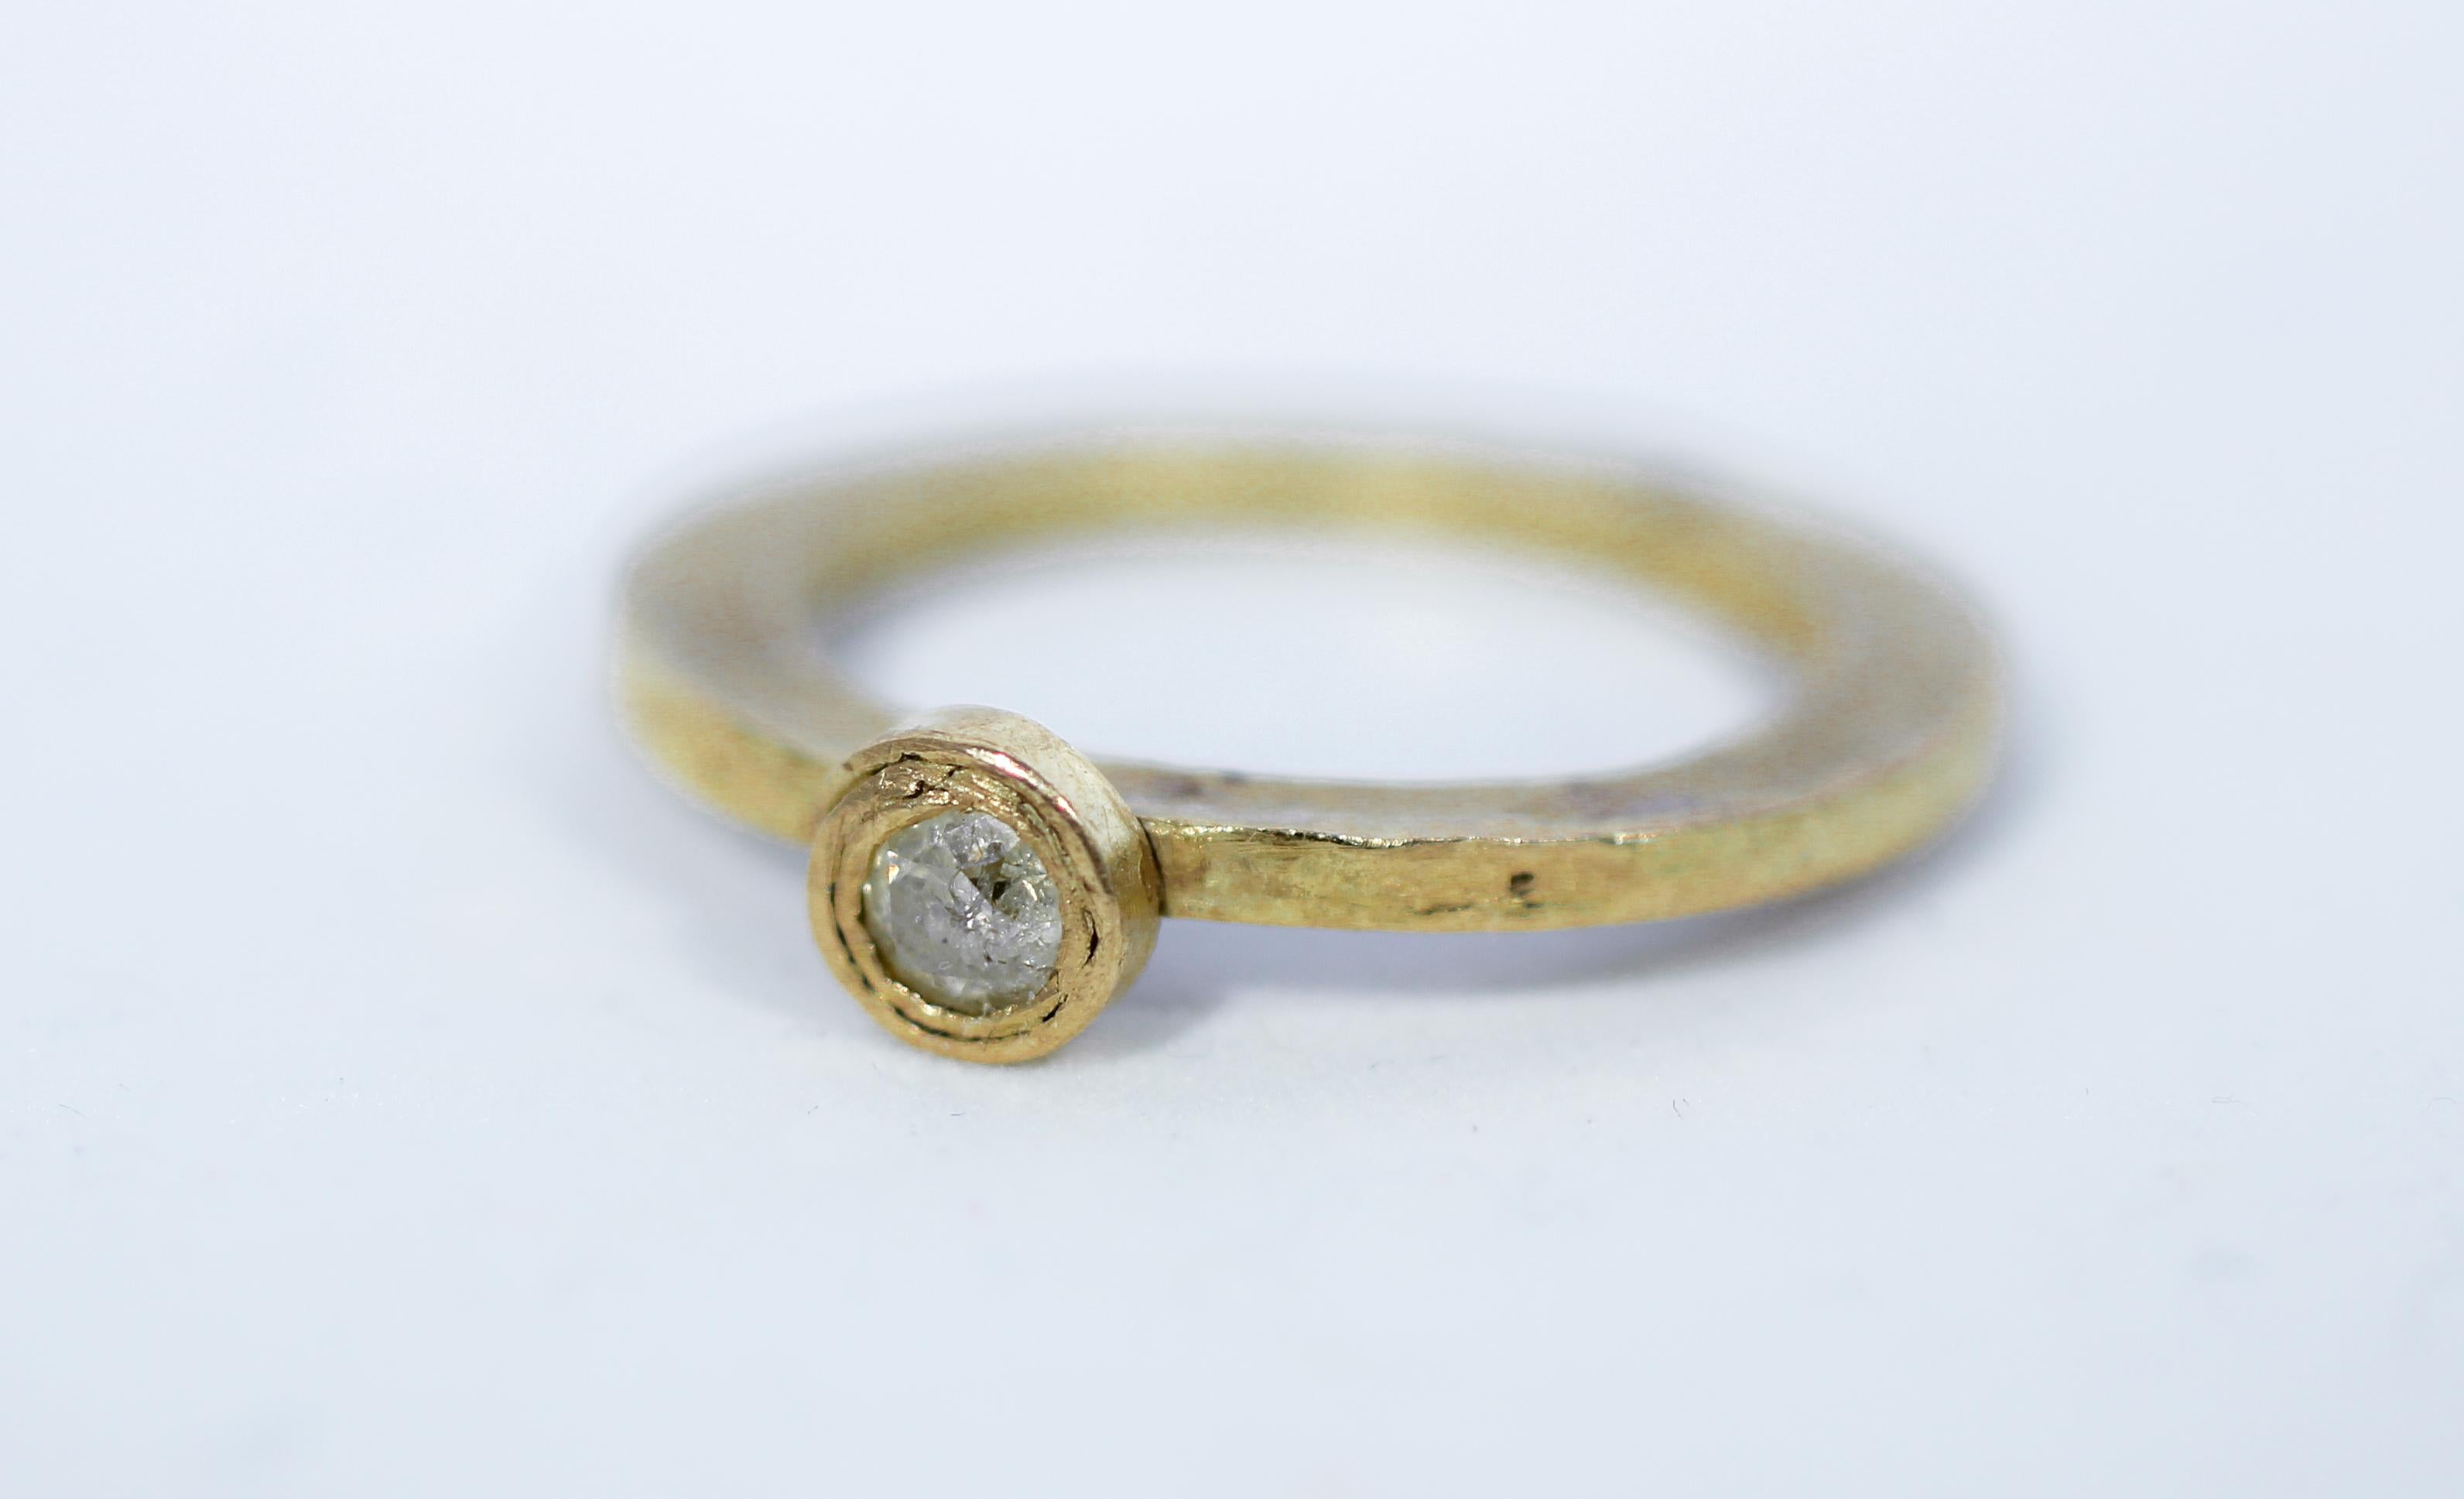 22 carat gold engagement ring